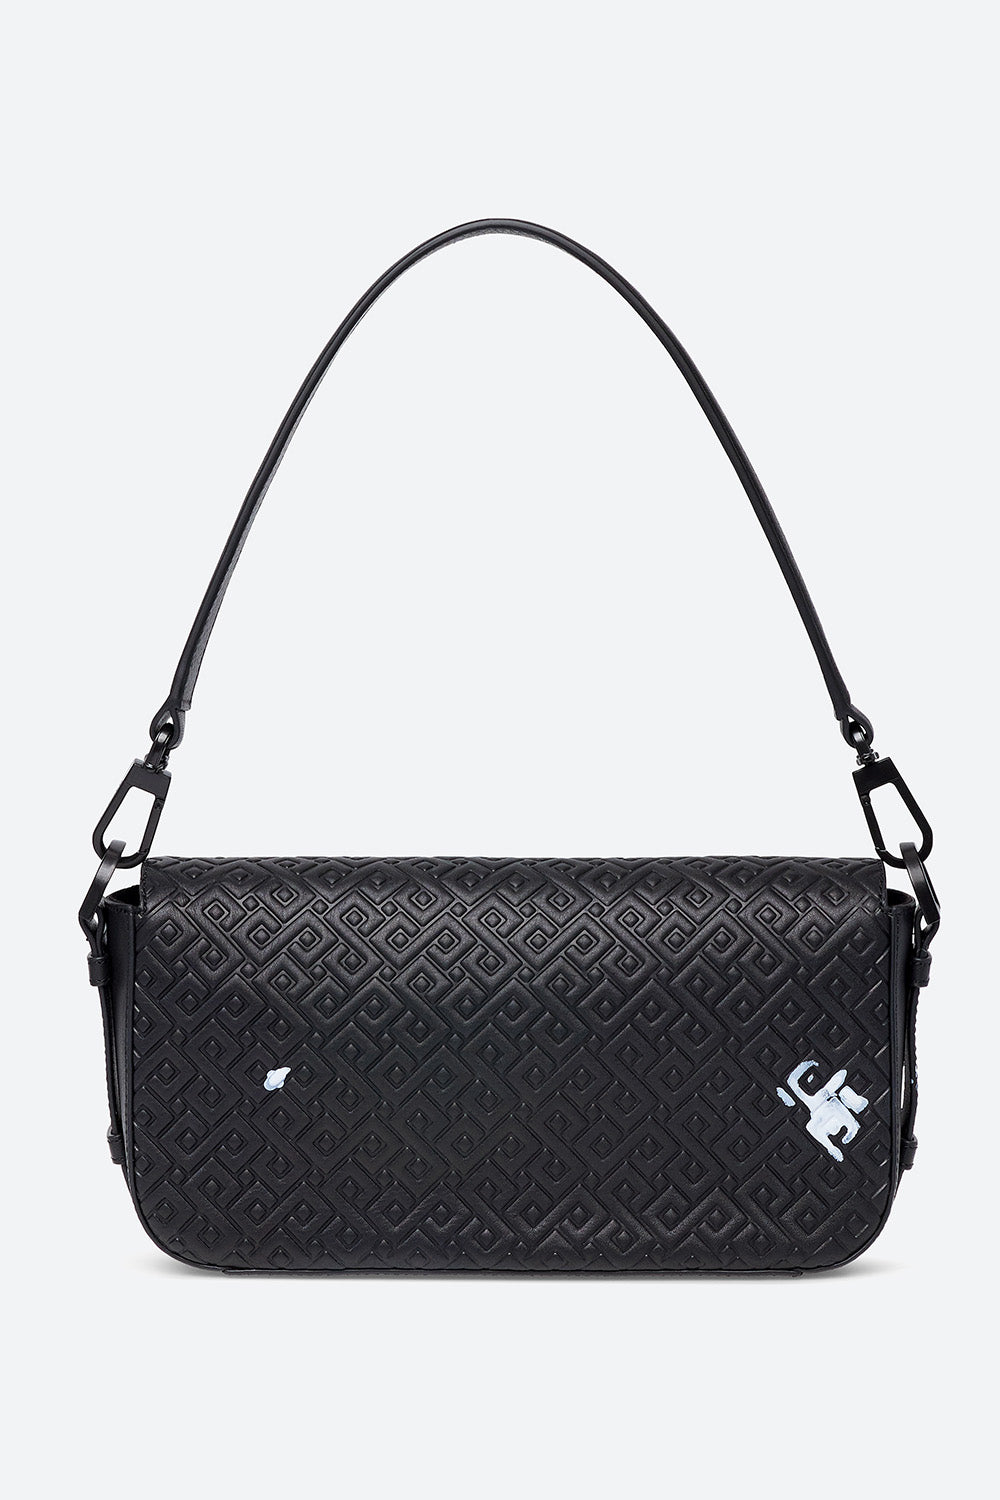 Coolman Coffeedan Series: Malvina "Special" Handbag in Black